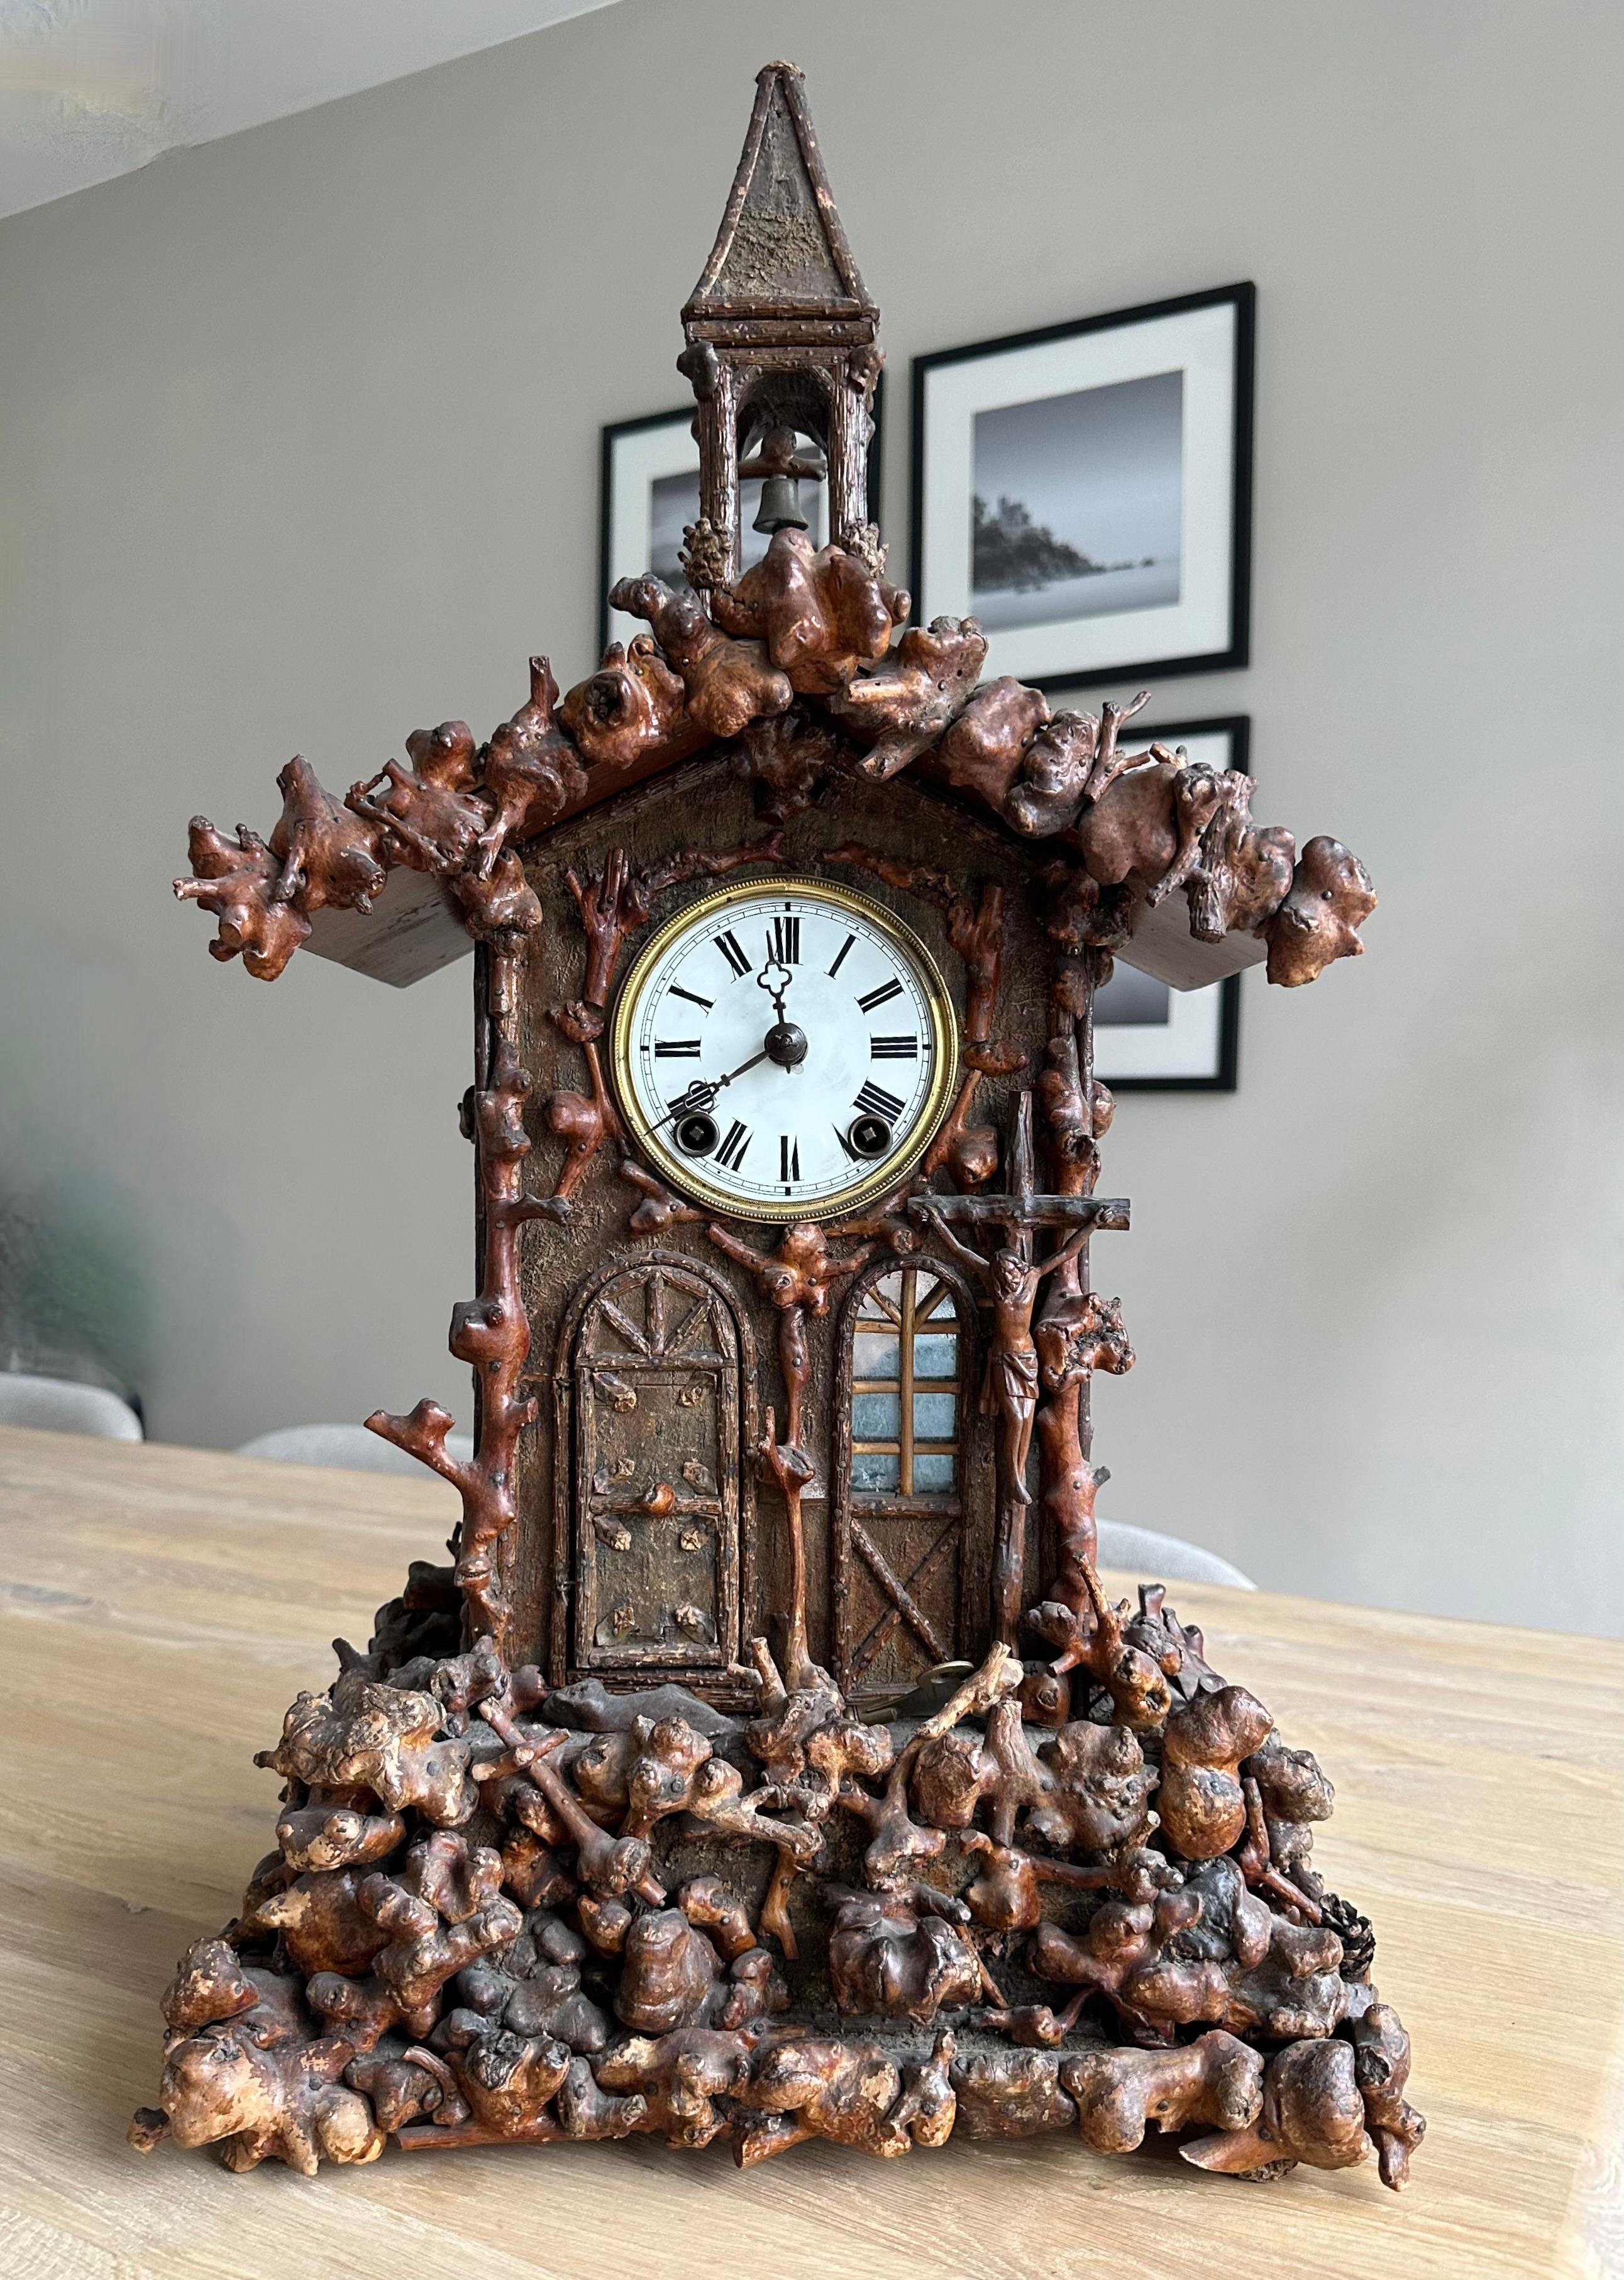 Horloge de cheminée rare et de grande qualité pour les collectionneurs et les passionnés.

Au fil des ans, nous avons eu le plaisir de posséder et de vendre un certain nombre de belles antiquités de la Forêt Noire, mais nous n'avons jamais rencontré